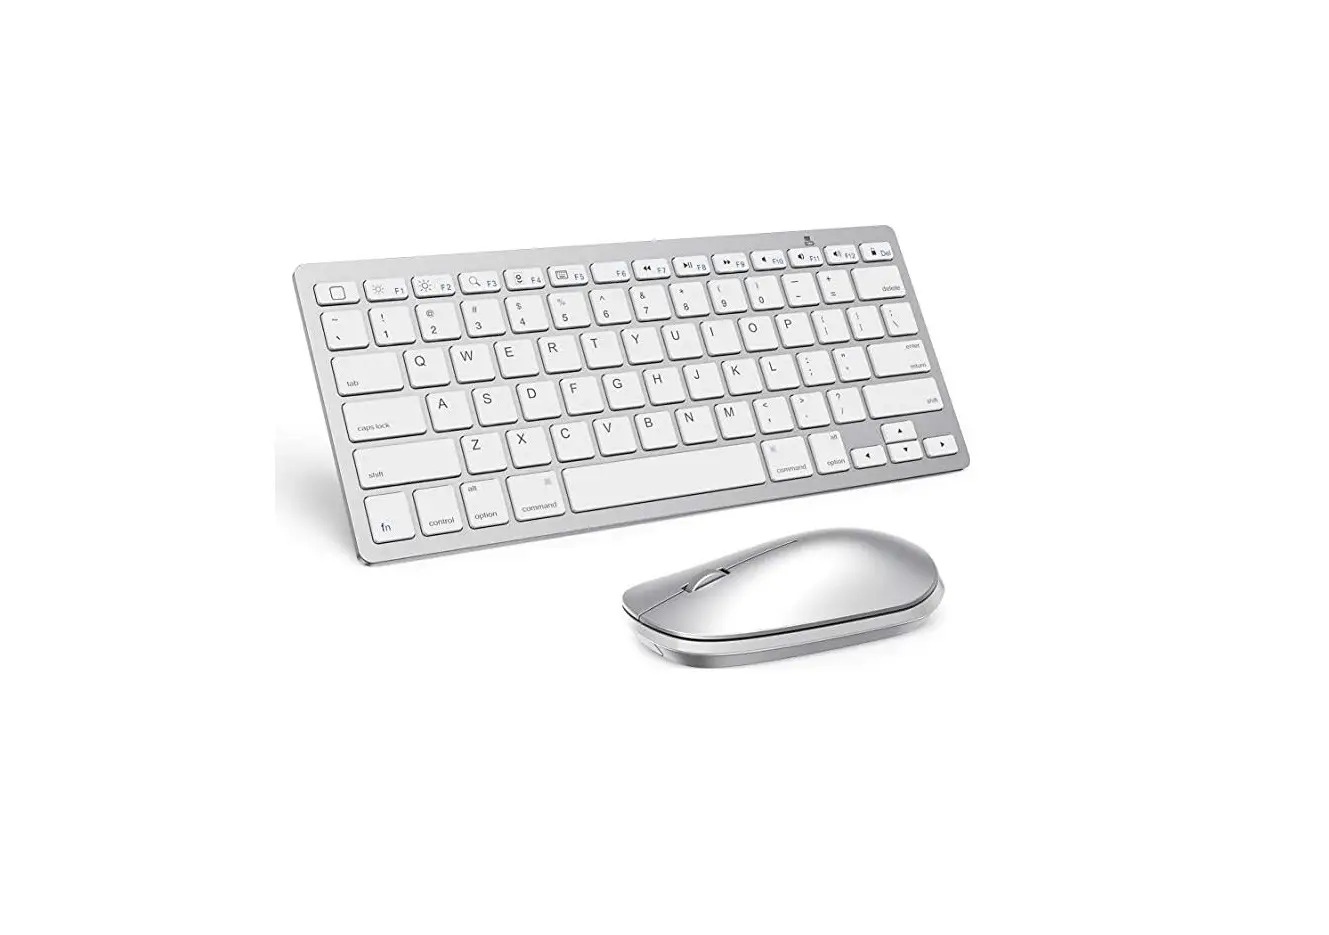 HB354 Wireless Keyboard